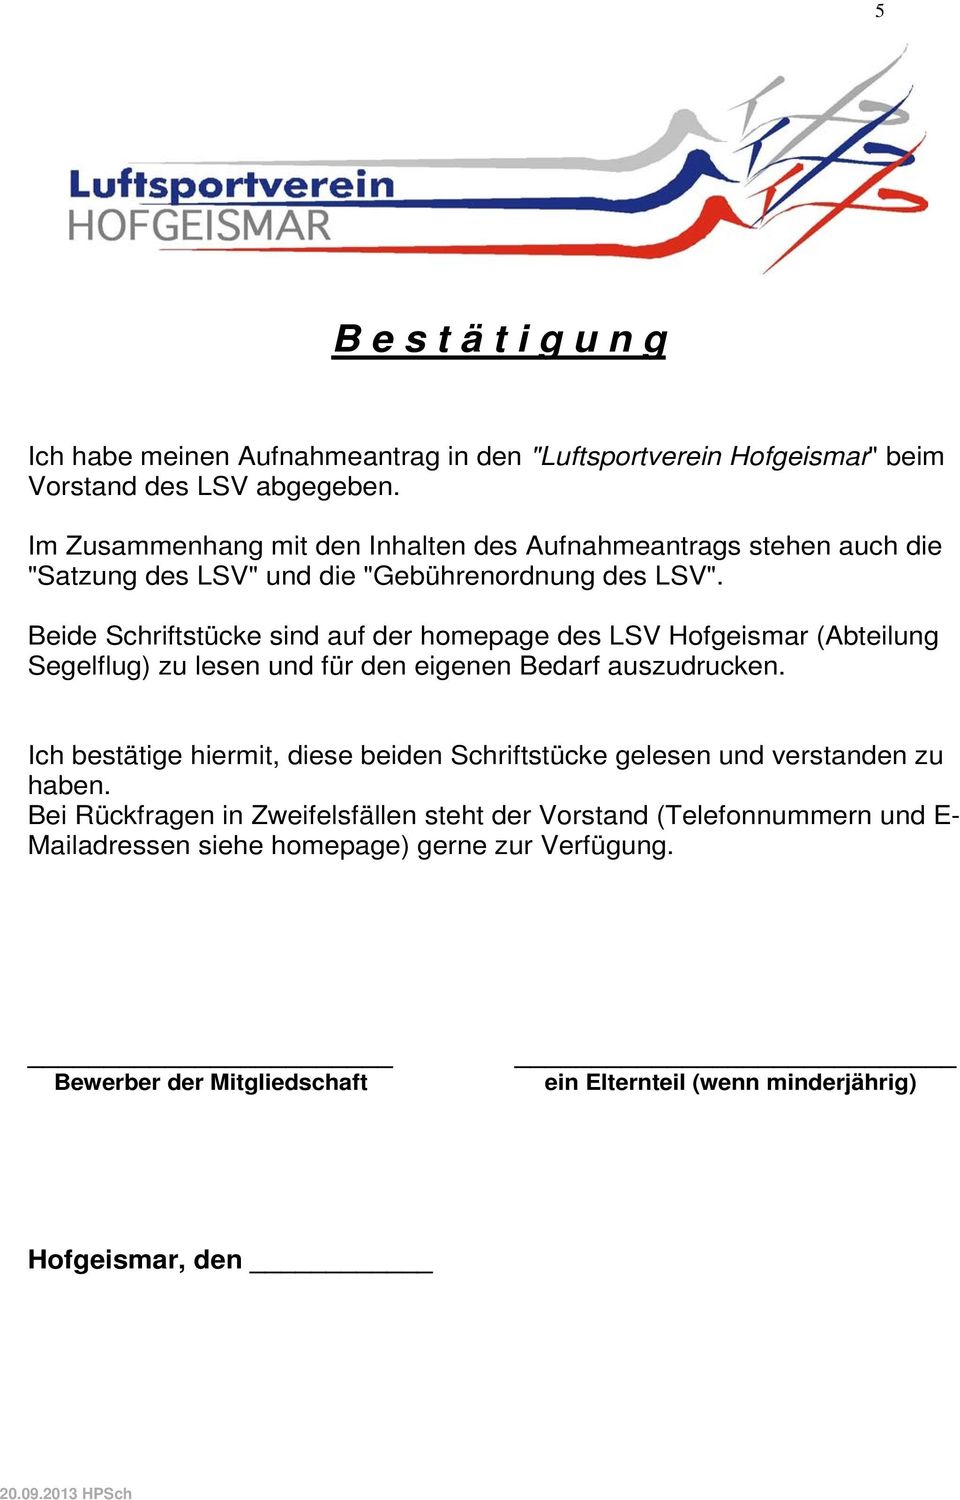 Beide Schriftstücke sind auf der homepage des LSV Hofgeismar (Abteilung Segelflug) zu lesen und für den eigenen Bedarf auszudrucken.